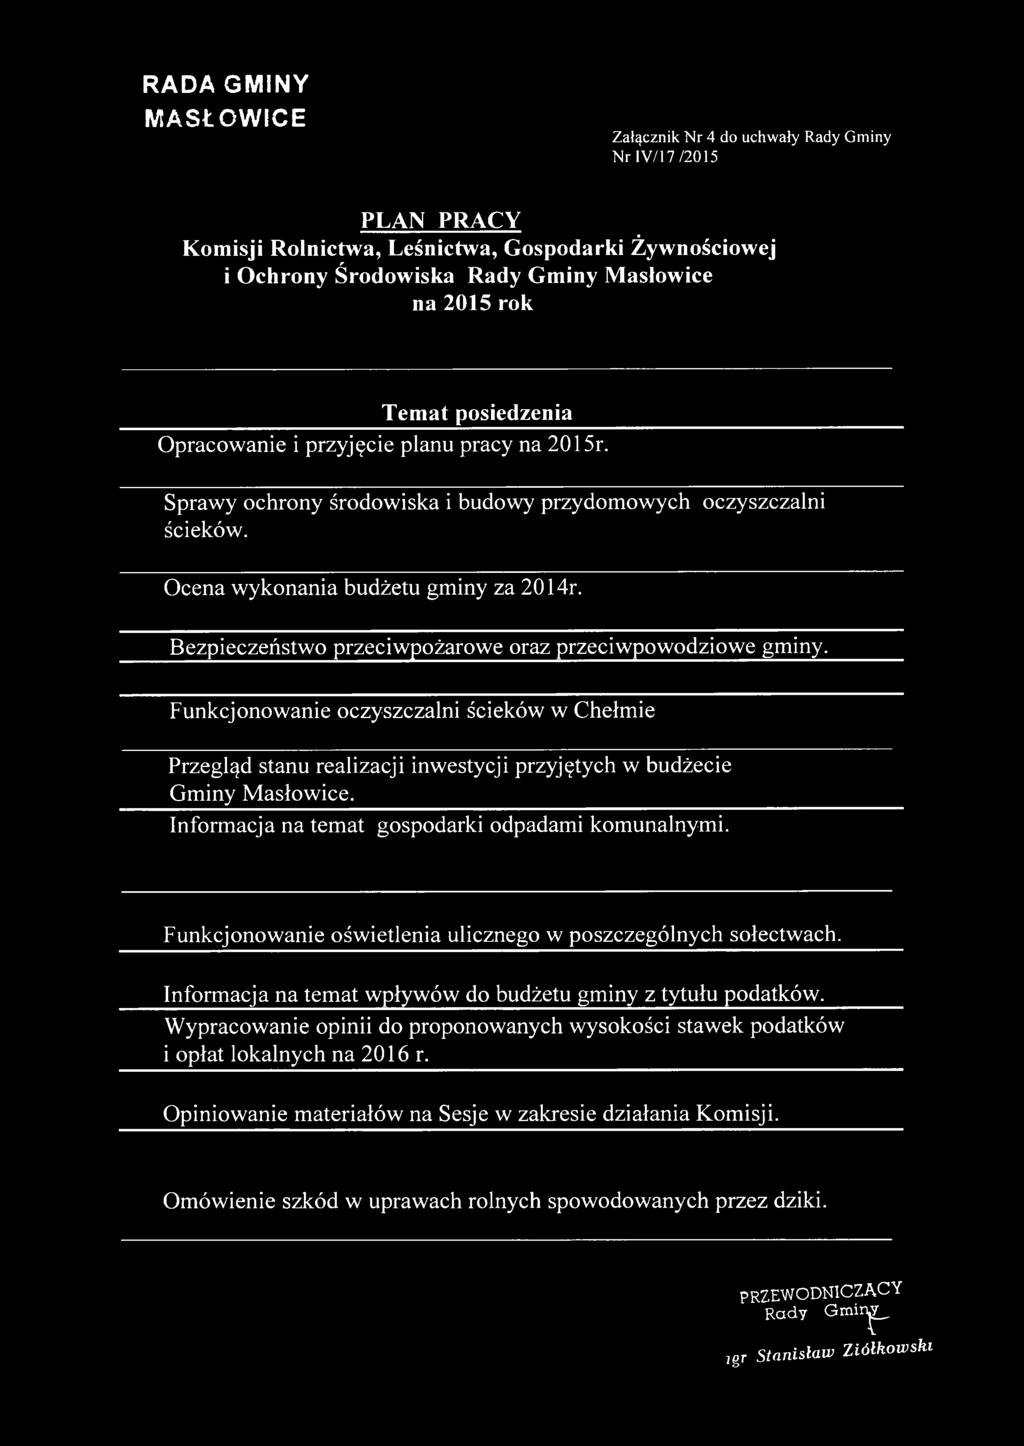 Bezpieczeństwo przeciwpożarowe oraz przeciwpowodziowe gminy. Funkcjonowanie oczyszczalni ścieków w Chełmie Przegląd stanu realizacji inwestycji przyjętych w budżecie Gminy Masłowice.